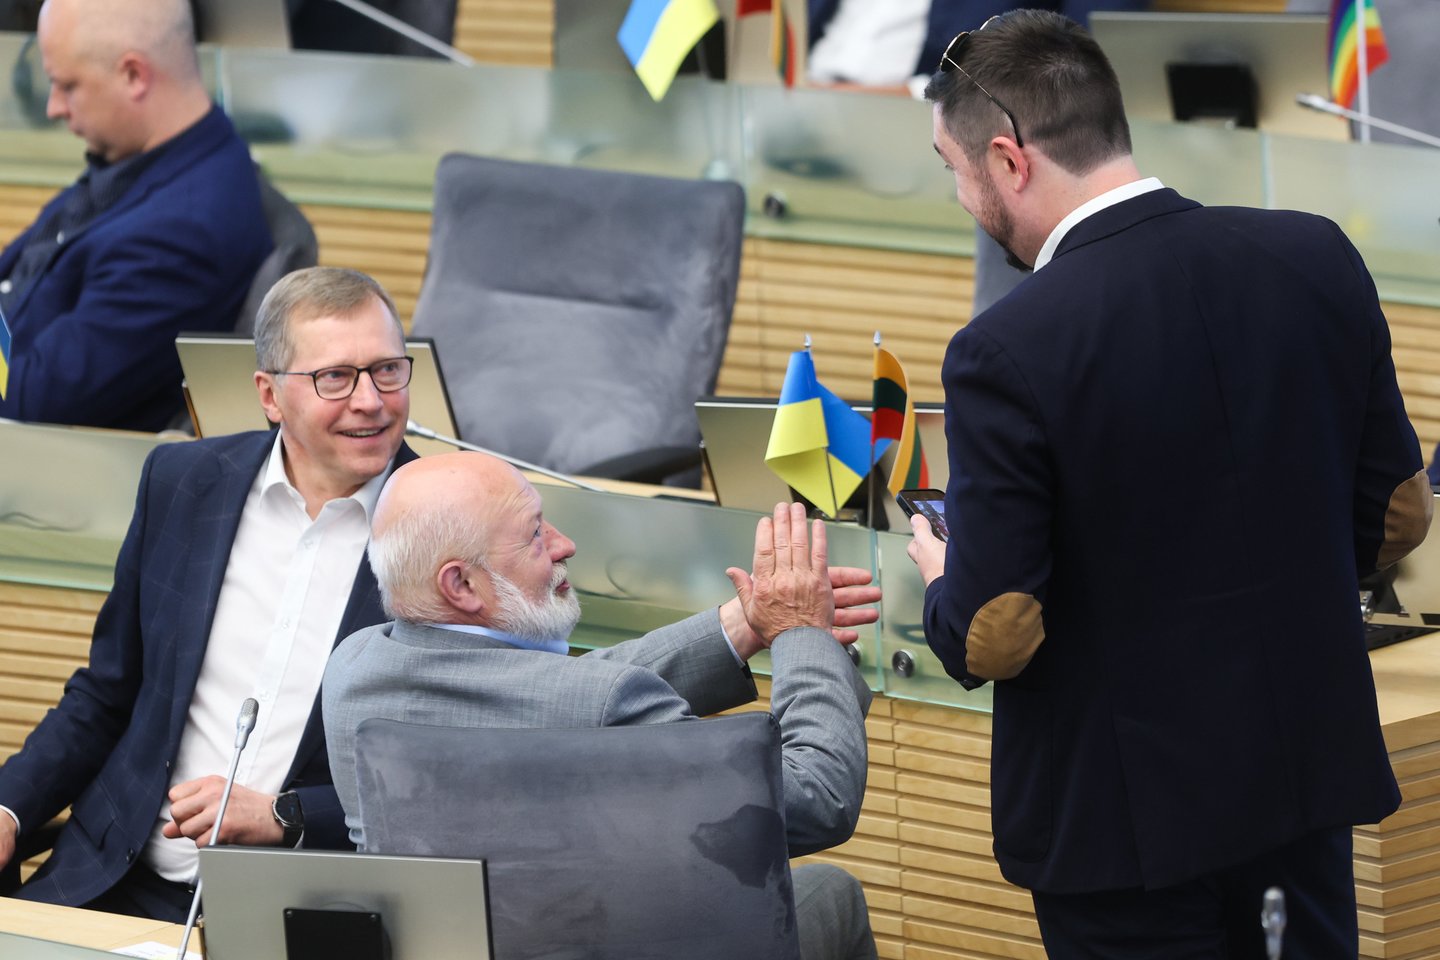 Prieš savaitę konservatorių partijos pirmininkas Gabrielius Landsbergis apstulbino partijos kolegas netikėtai pranešęs, kad siūlys rengti pirmalaikius Seimo rinkimus, o Vyriausybei – atsistatydinti.<br>R.Danisevičiaus nuotr.